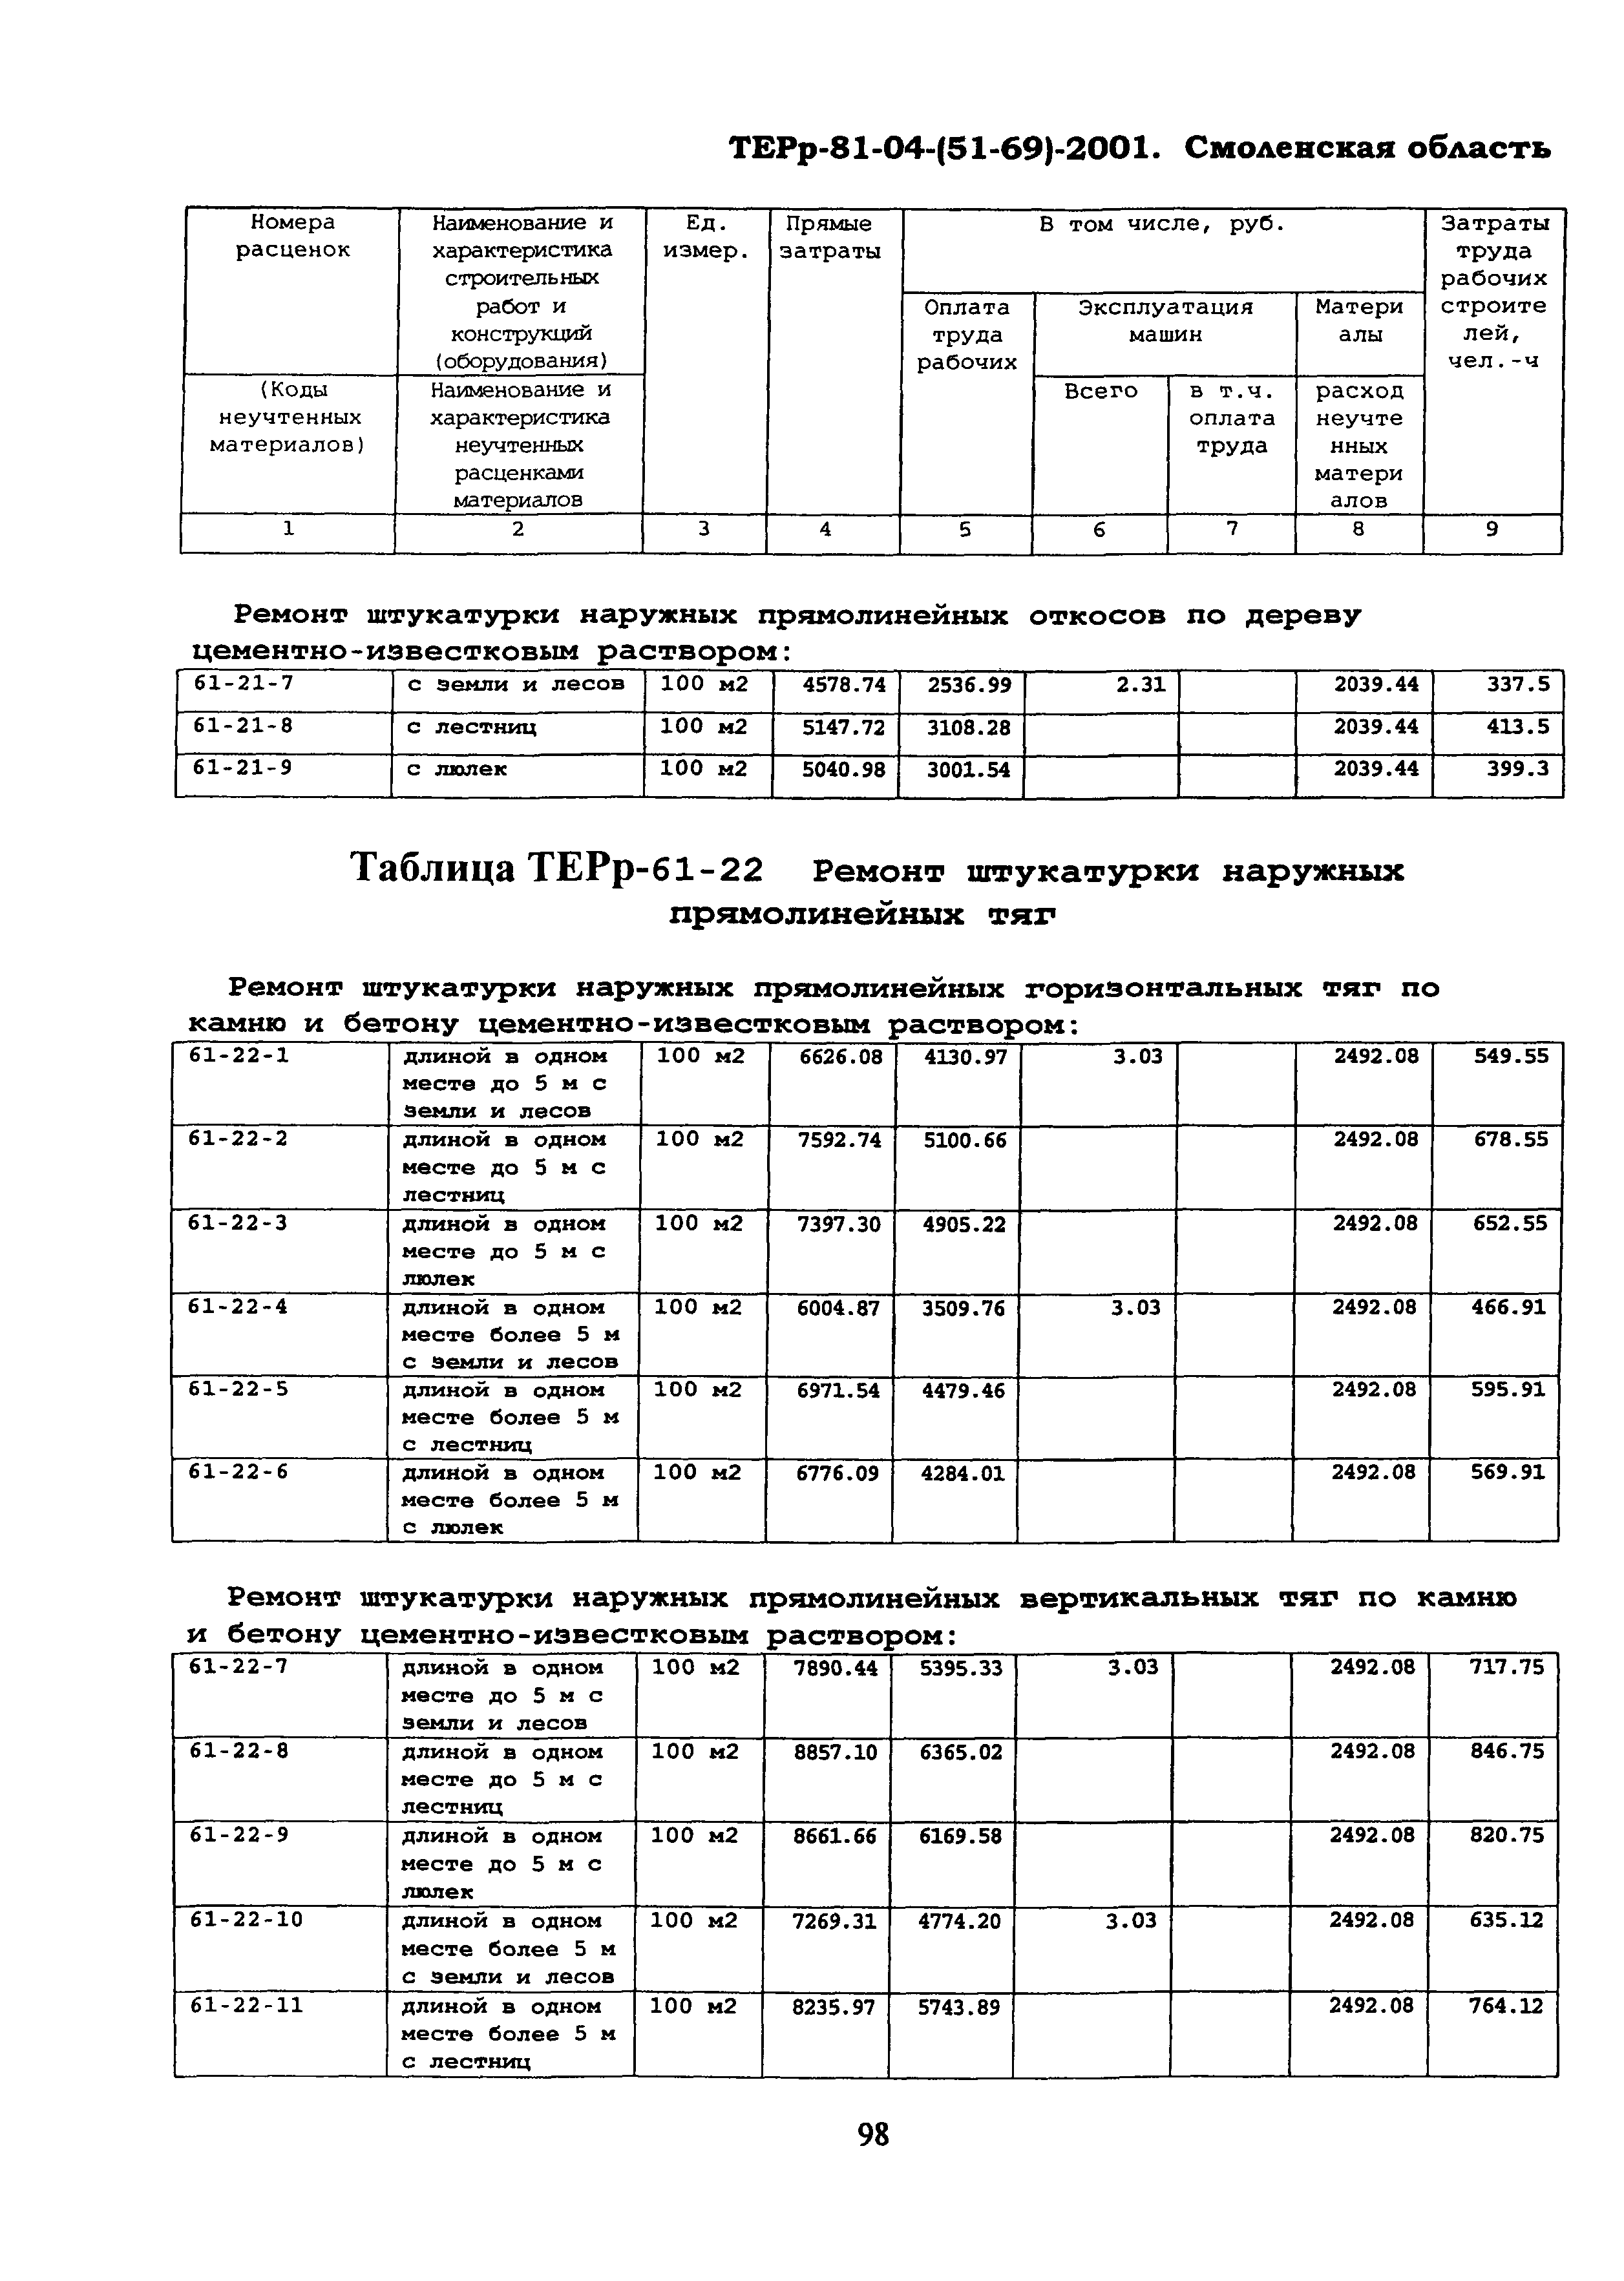 ТЕРр Смоленской области 2001-61